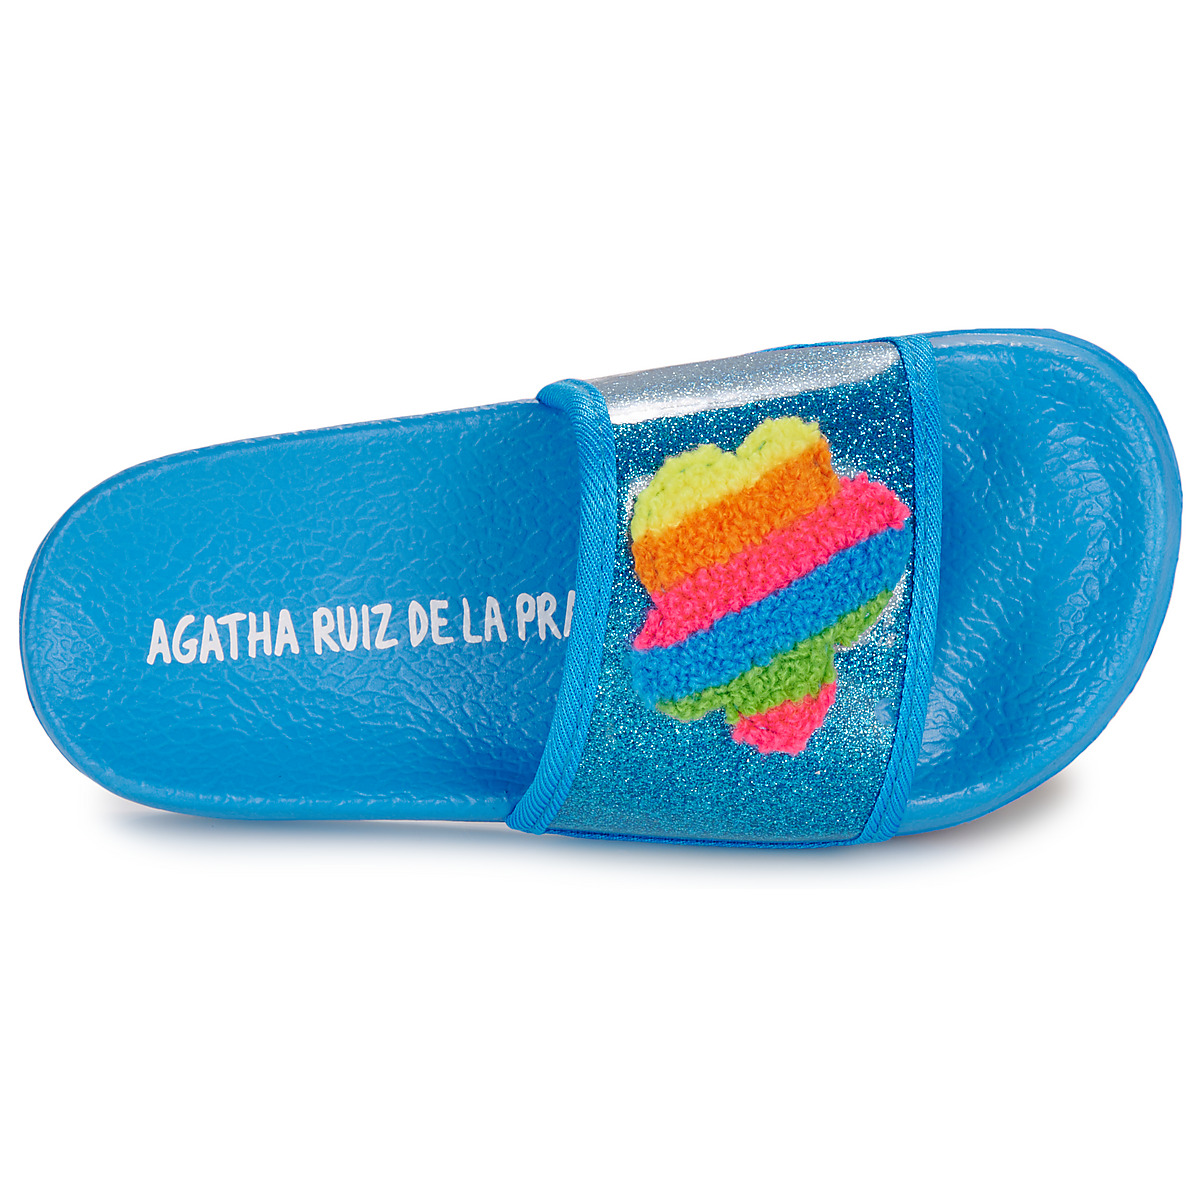 Agatha Ruiz de la Prada Bleu / Multicolore FLIP FLOP NUBE 0Tt0LD8p